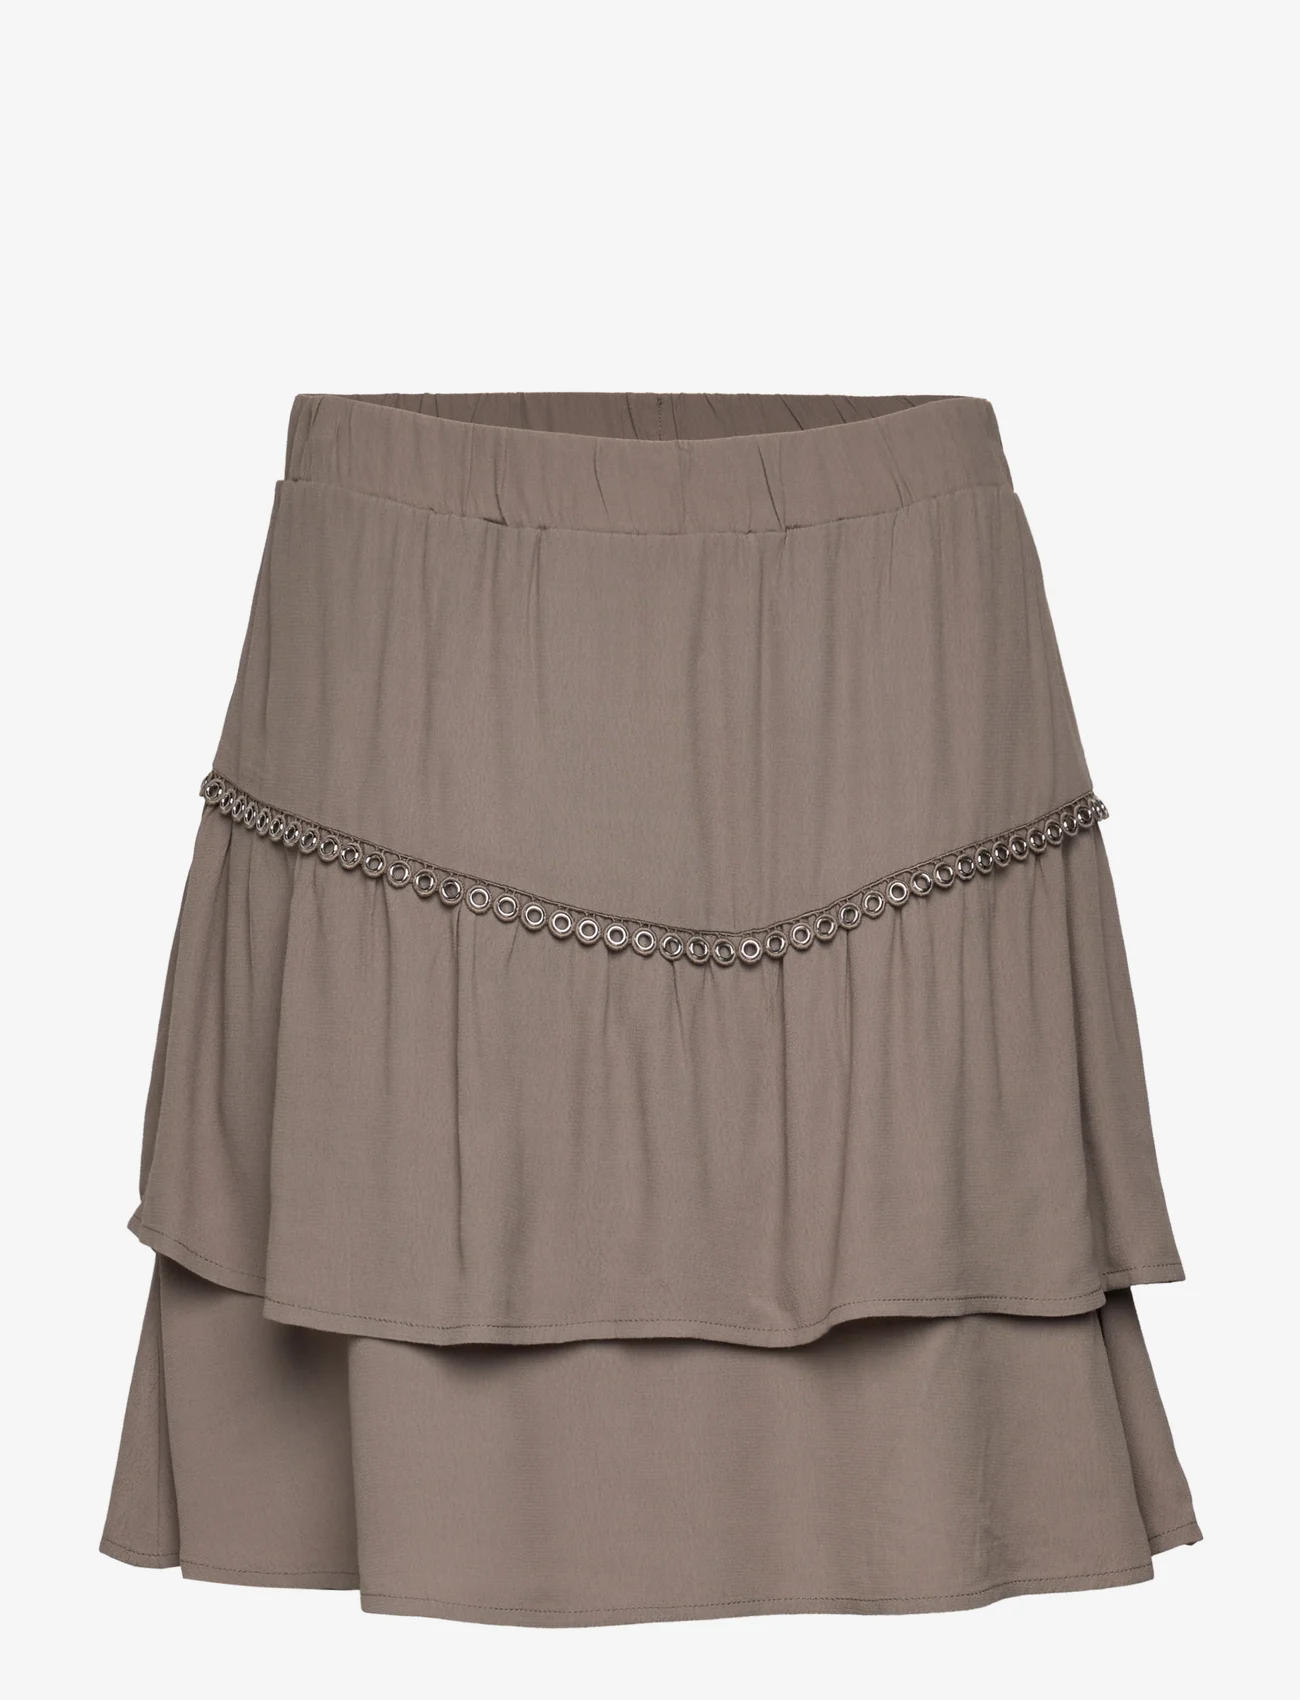 Dante6 - D6Chia eyelet mini skirt - korte rokken - warm grey - 0